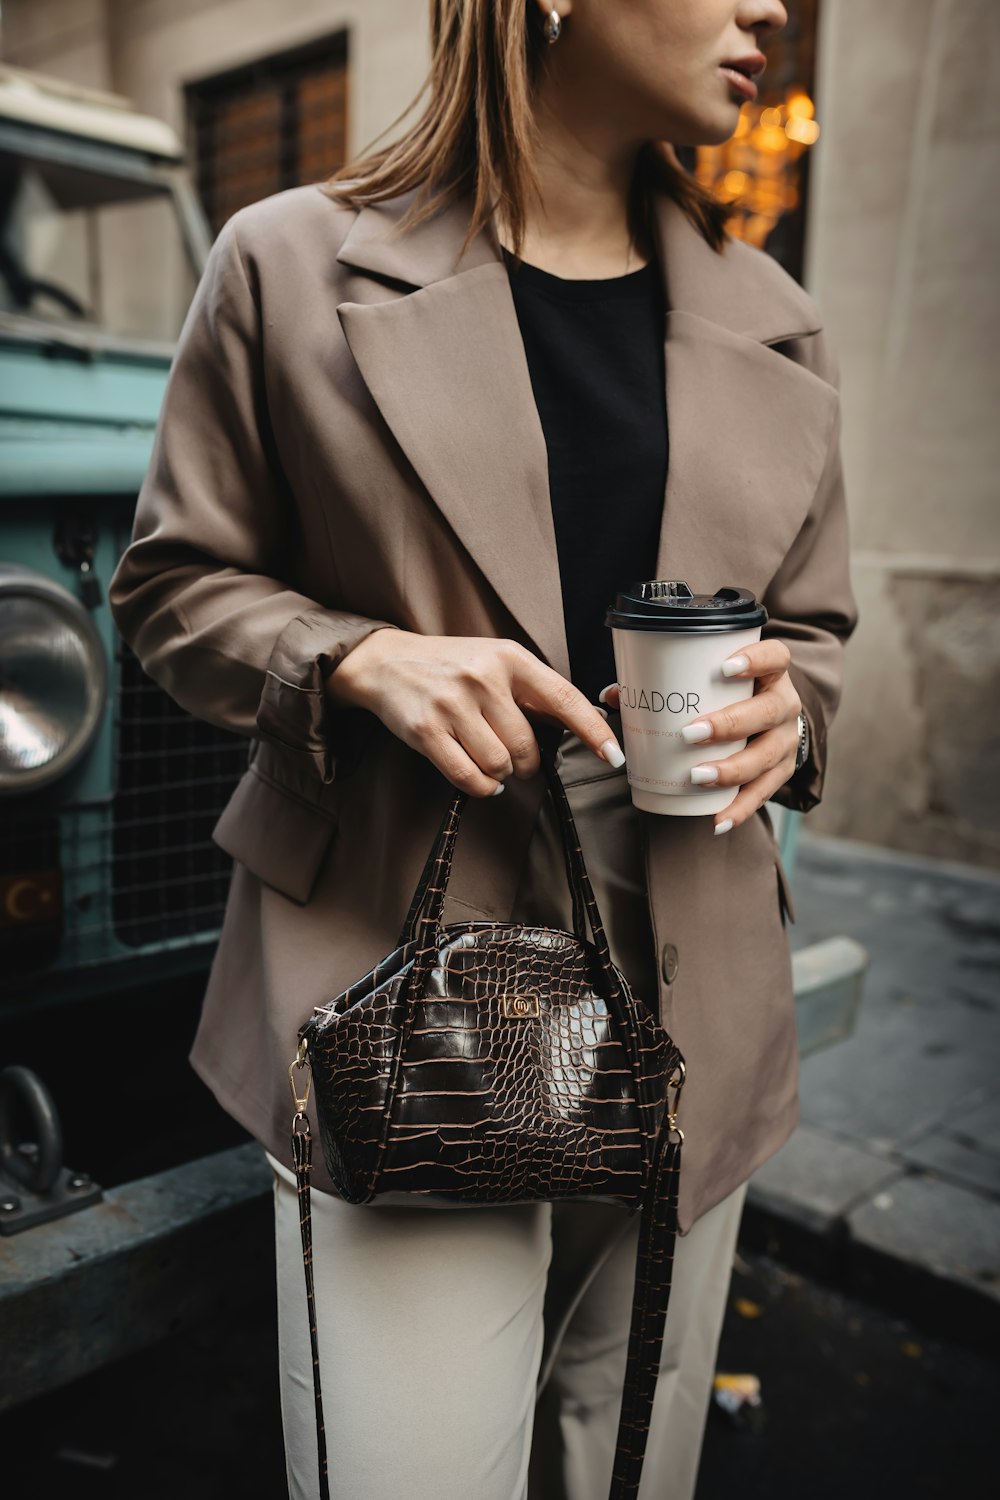 コーヒーカップと財布を持った女性